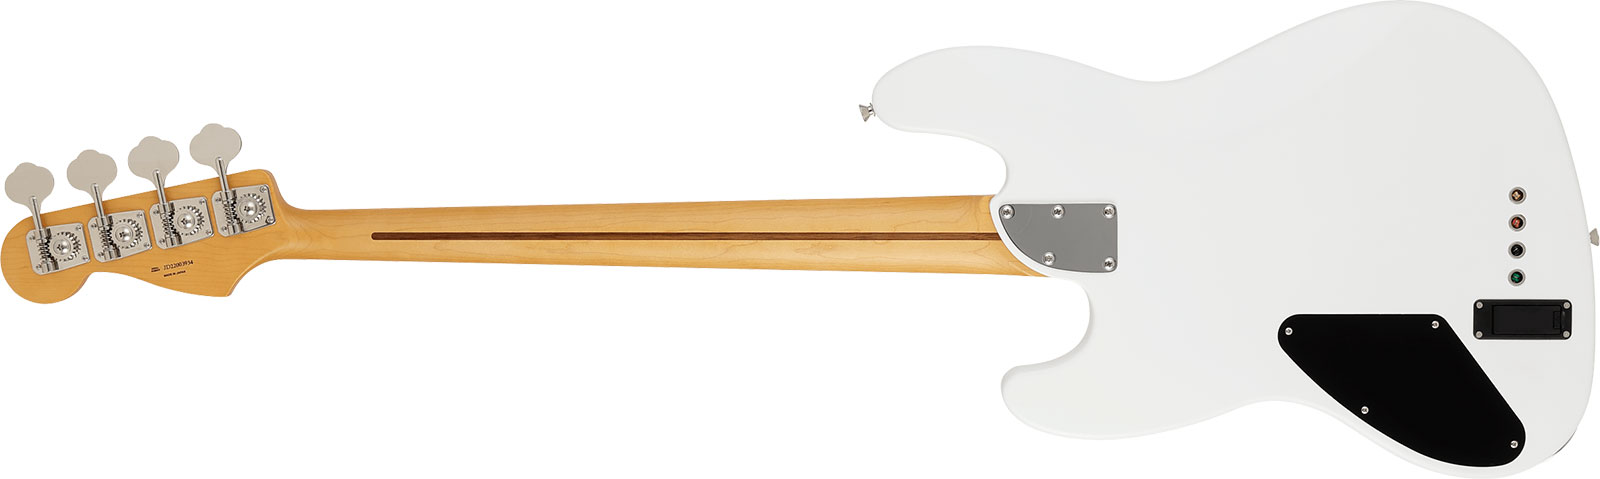 Fender Jazz Bass Elemental Mij Jap Active Rw - Nimbus White - Bajo eléctrico de cuerpo sólido - Variation 1